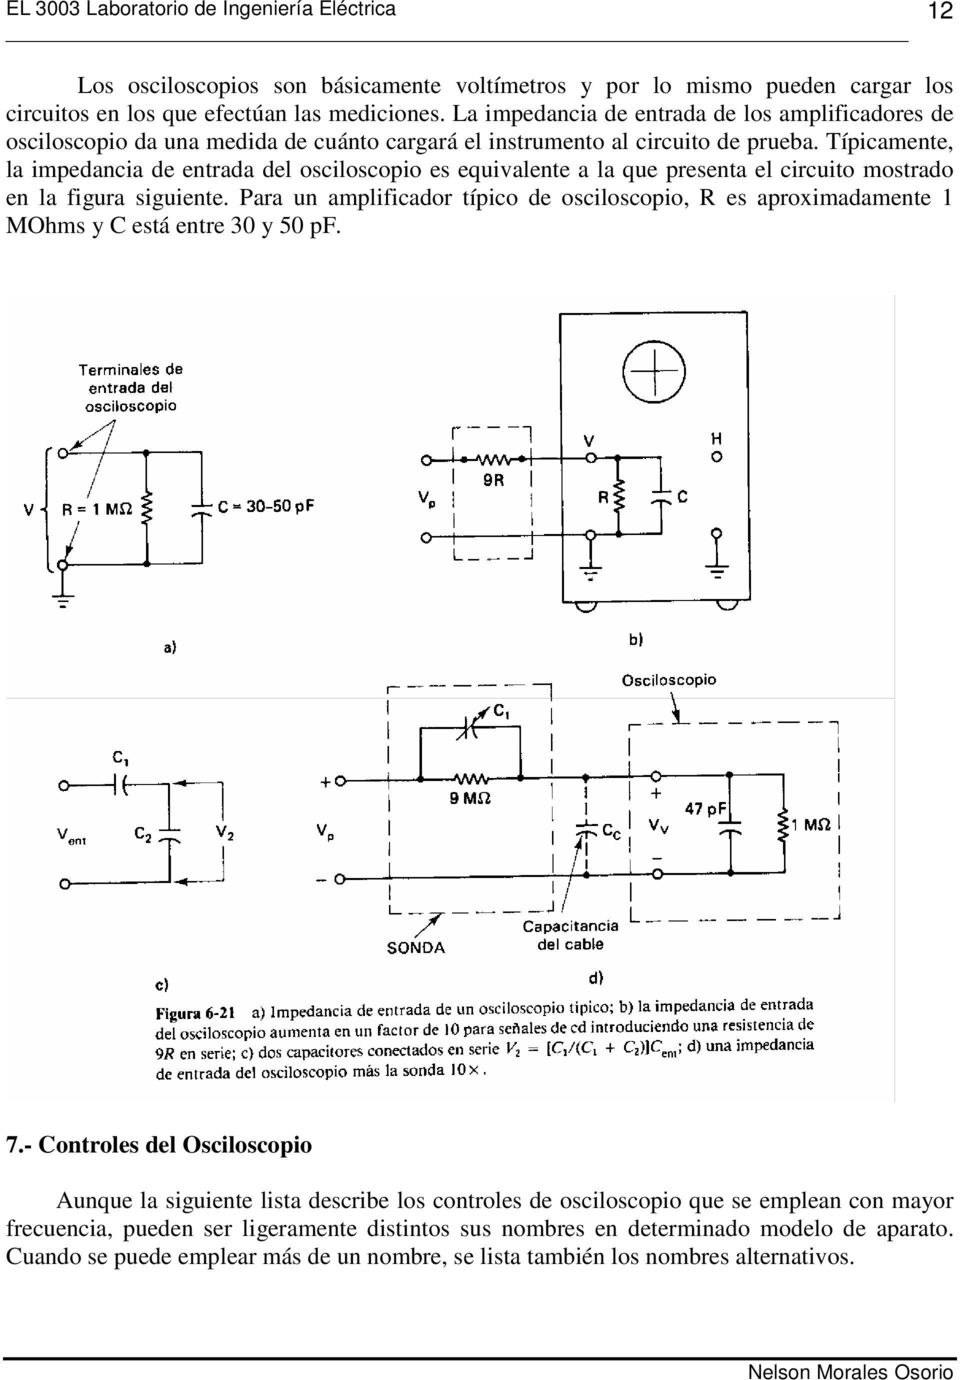 Típicamente, la impedancia de entrada del osciloscopio es equivalente a la que presenta el circuito mostrado en la figura siguiente.